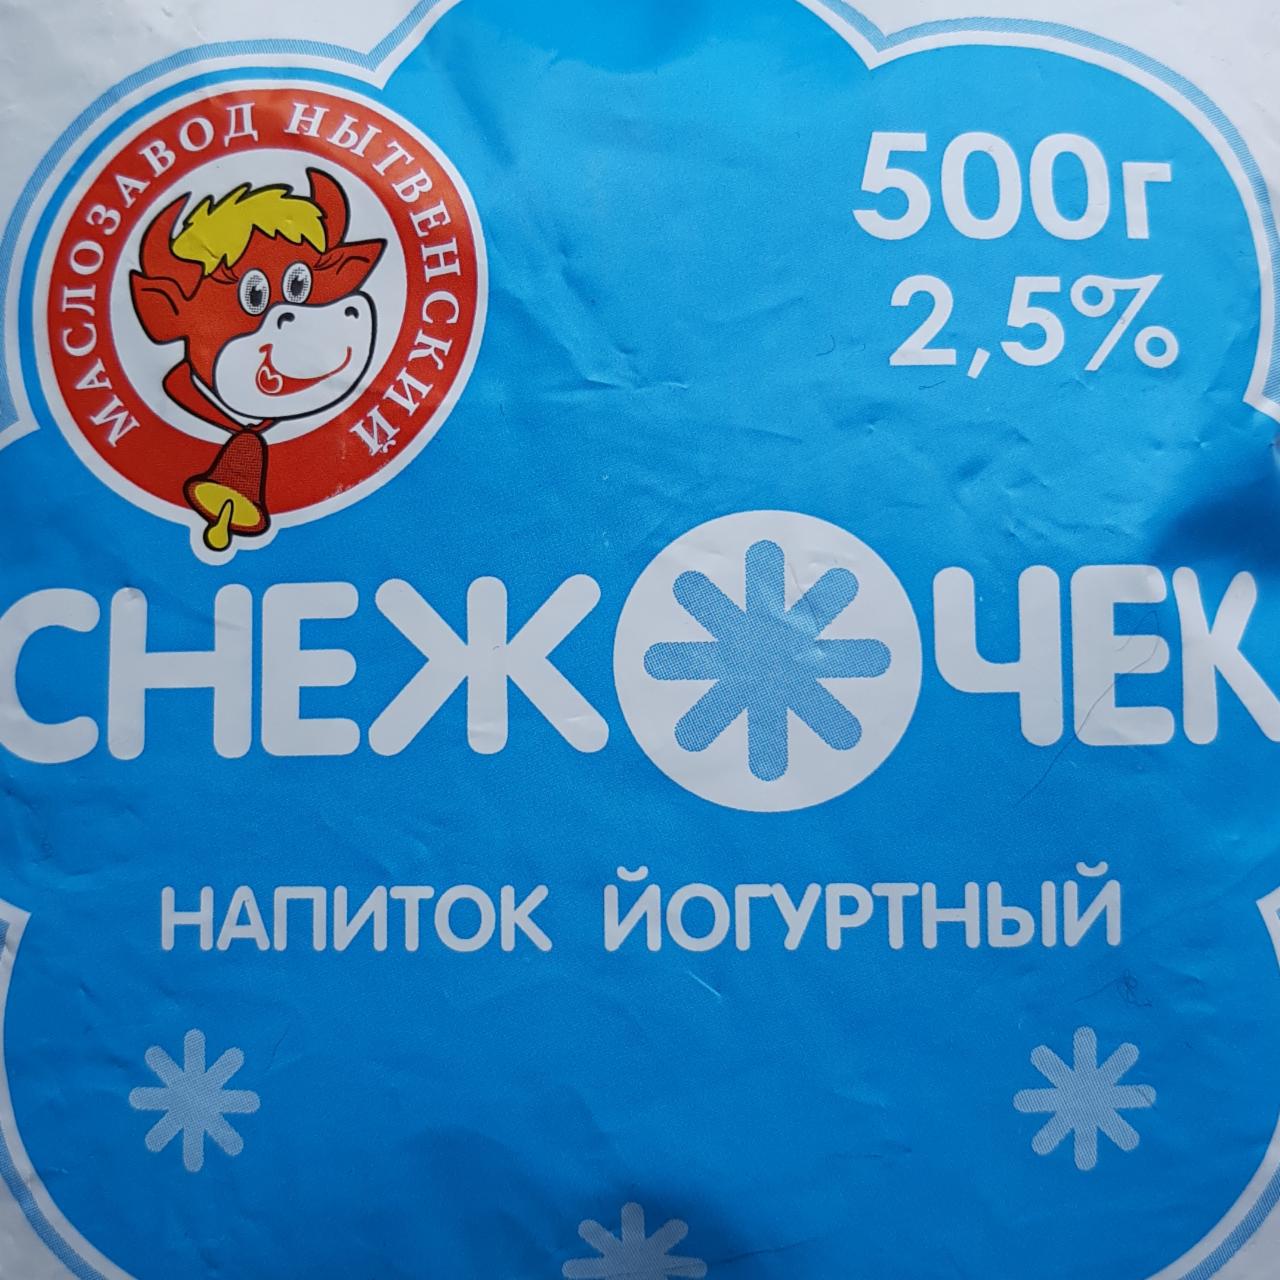 Фото - йогуртный напиток снежочек 2,5% Нытвенский маслозавод